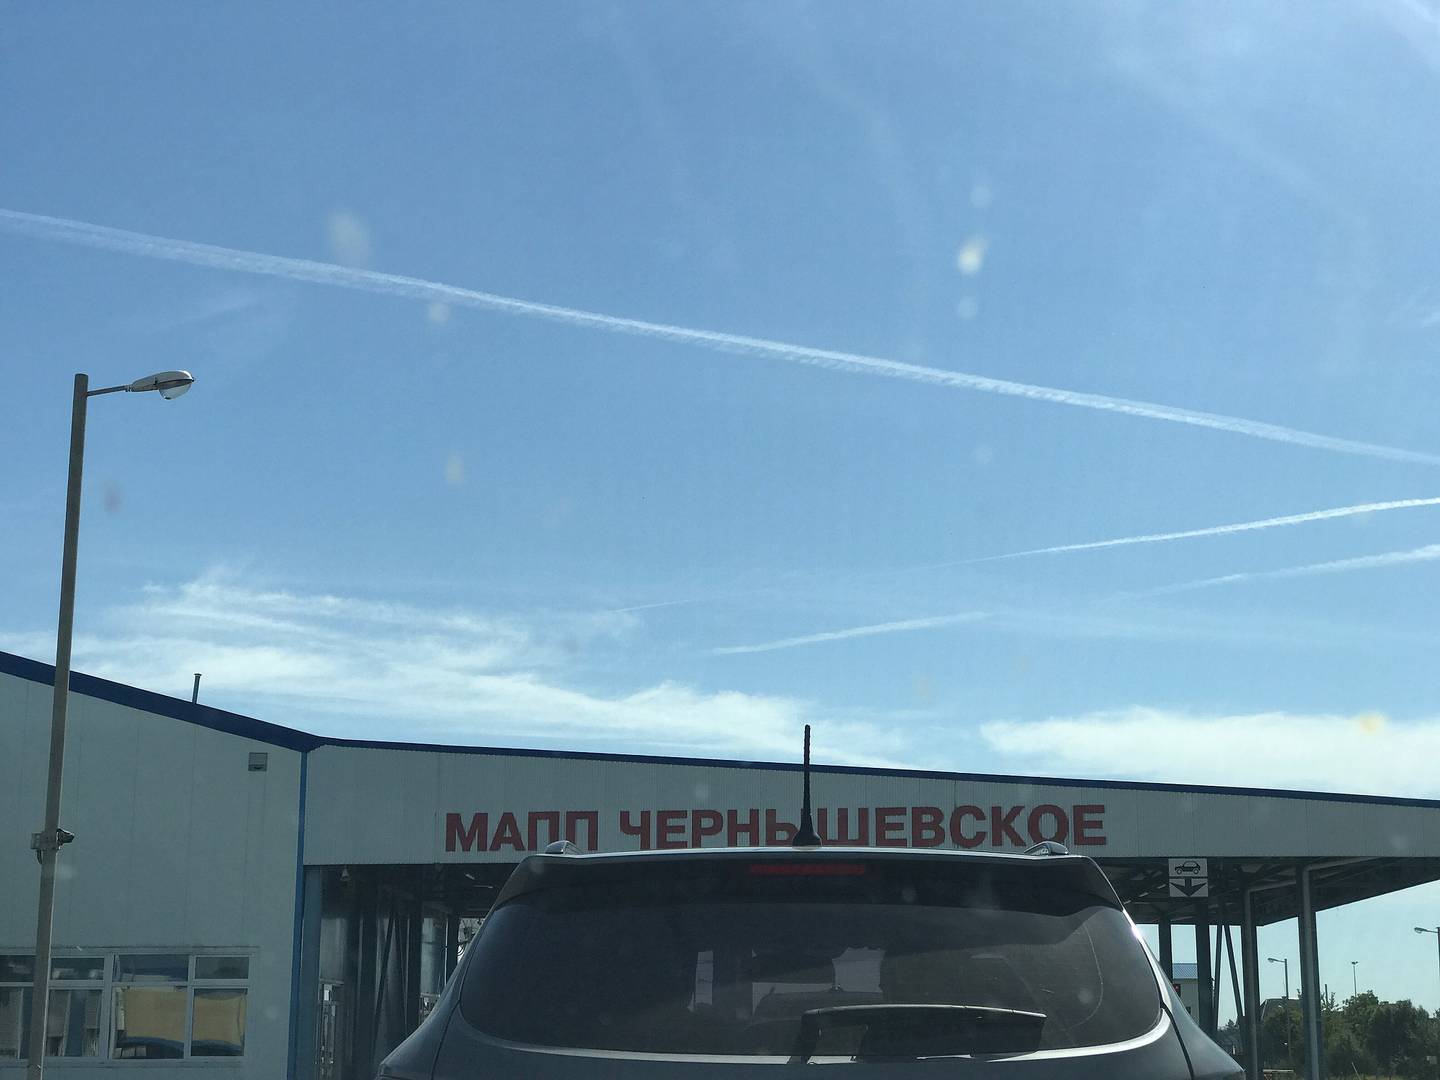 МАПП Чернышевское, 2018 год